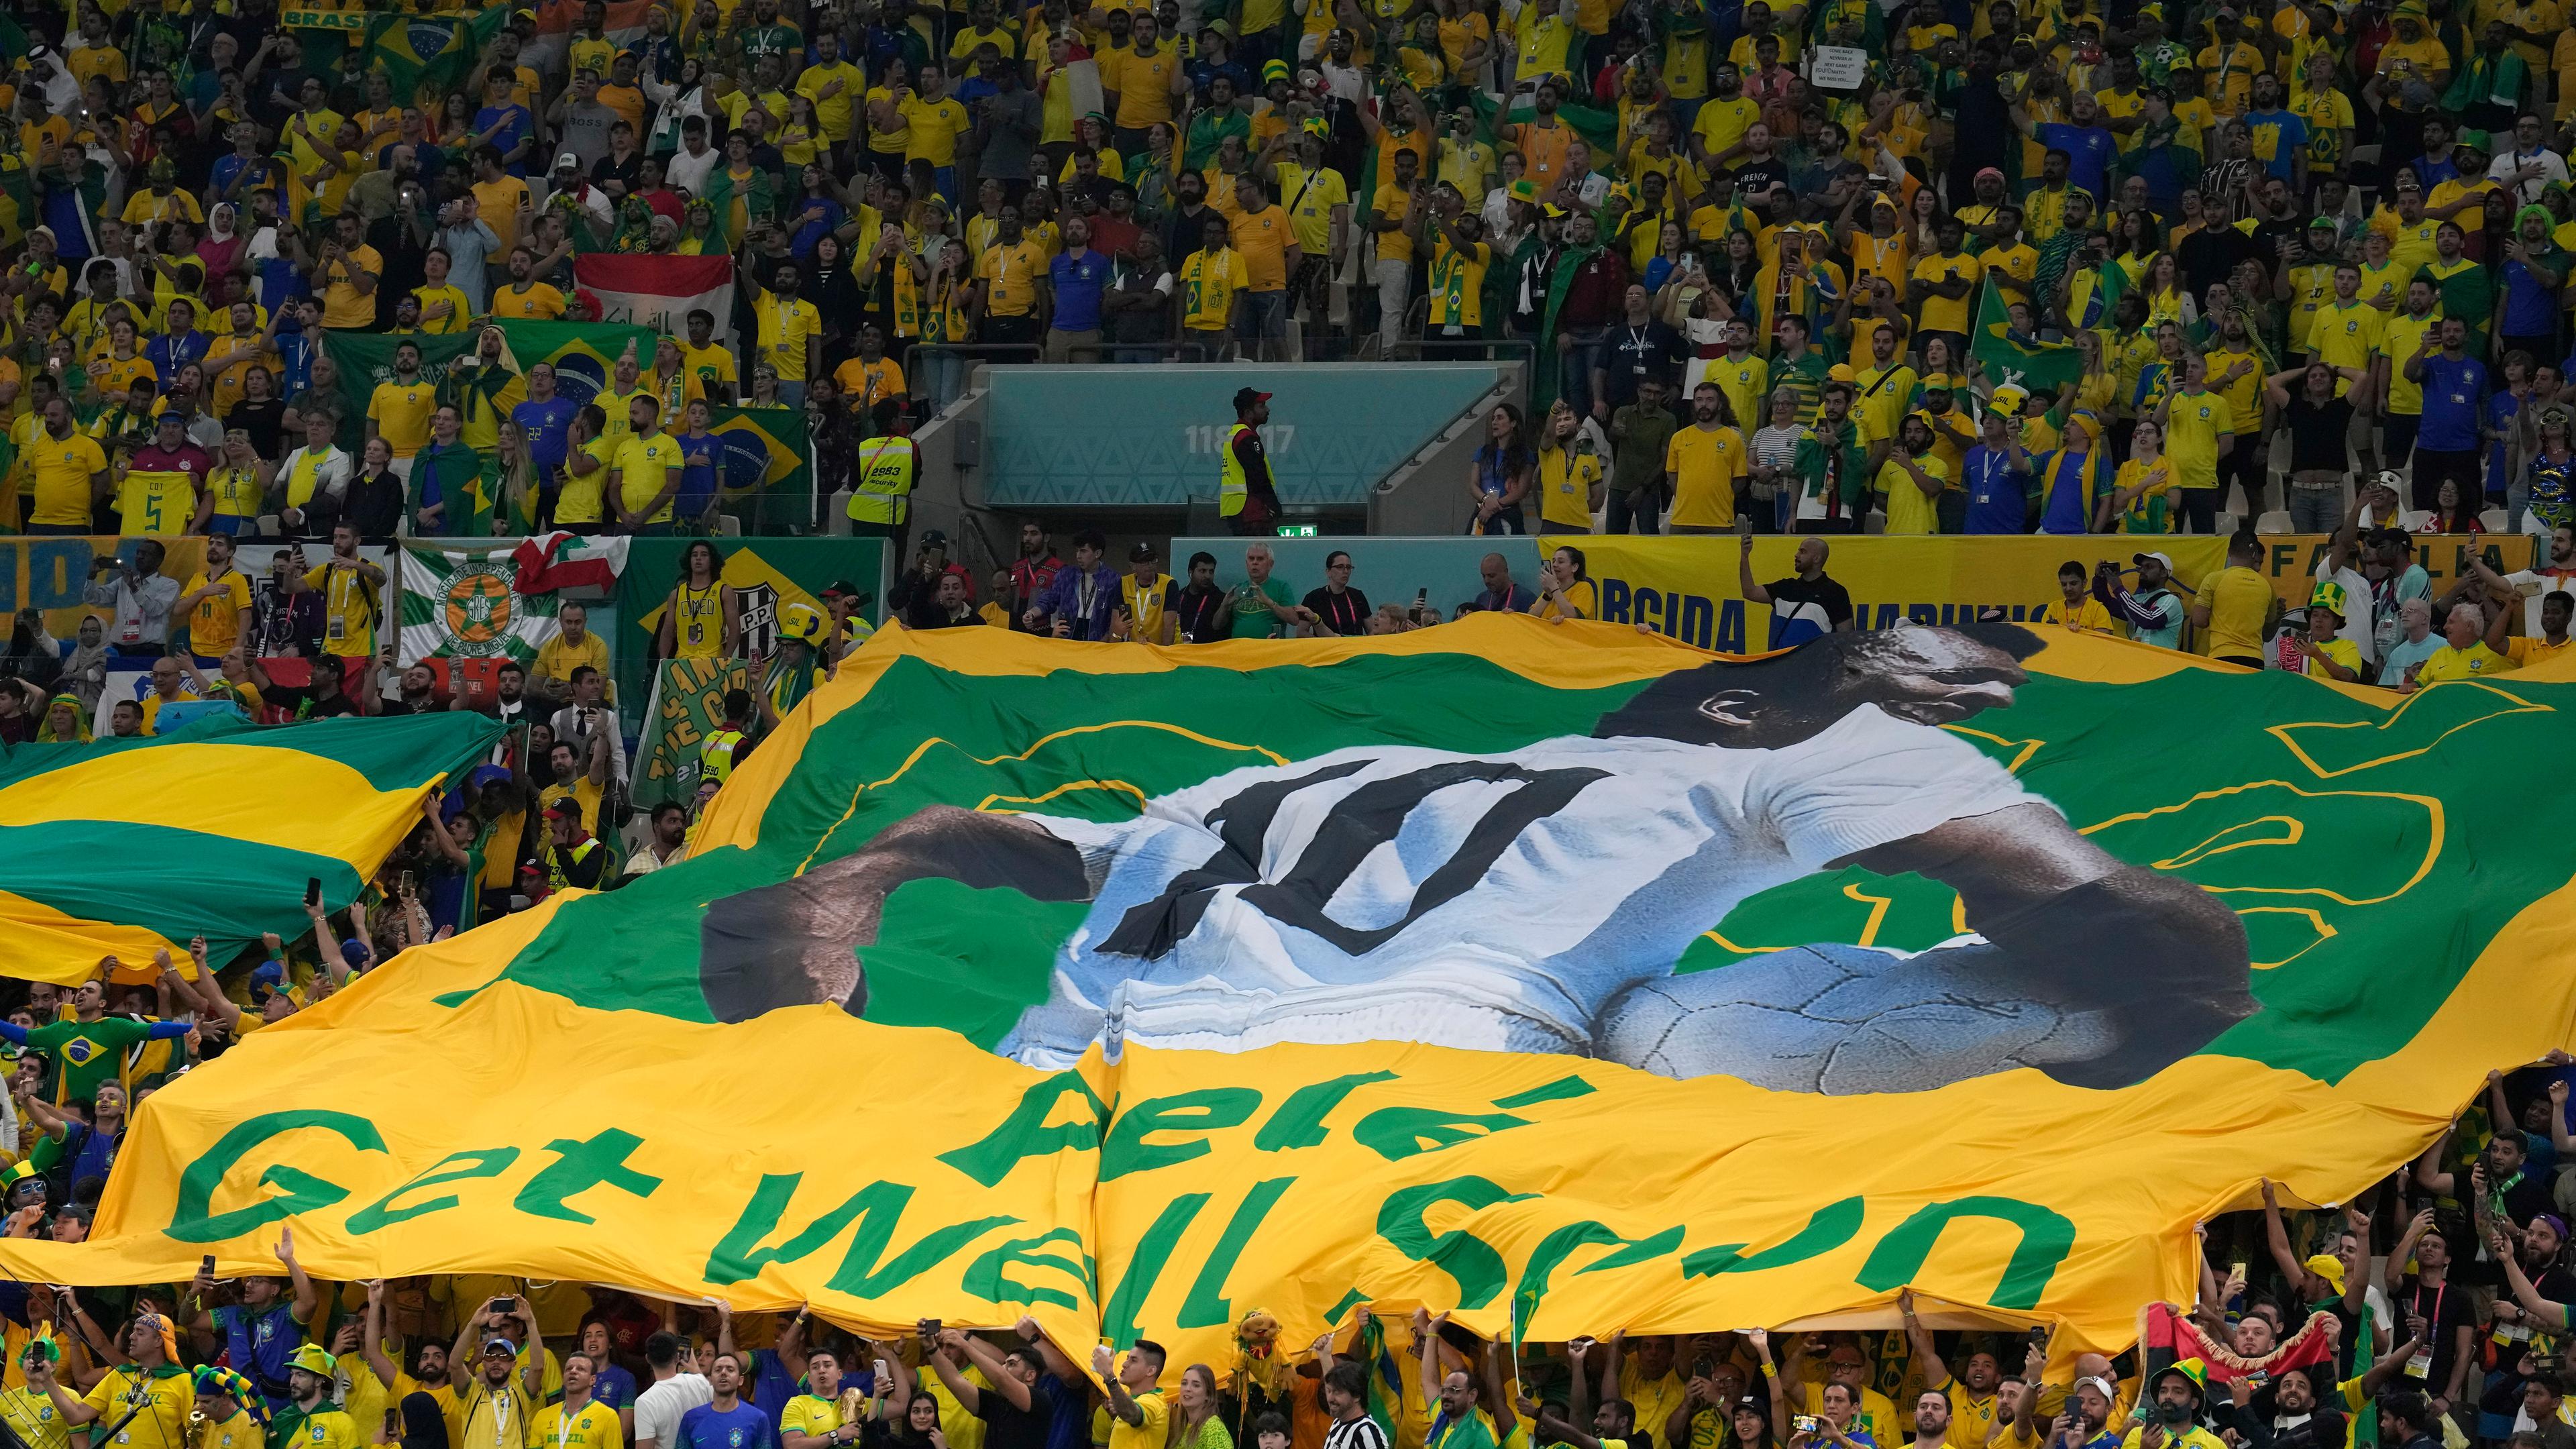 Brasilien-Fans halten während der WM ein Banner, auf dem "Get Well Soon" steht, für den ehemaligen Fußballspieler Pelé hoch.